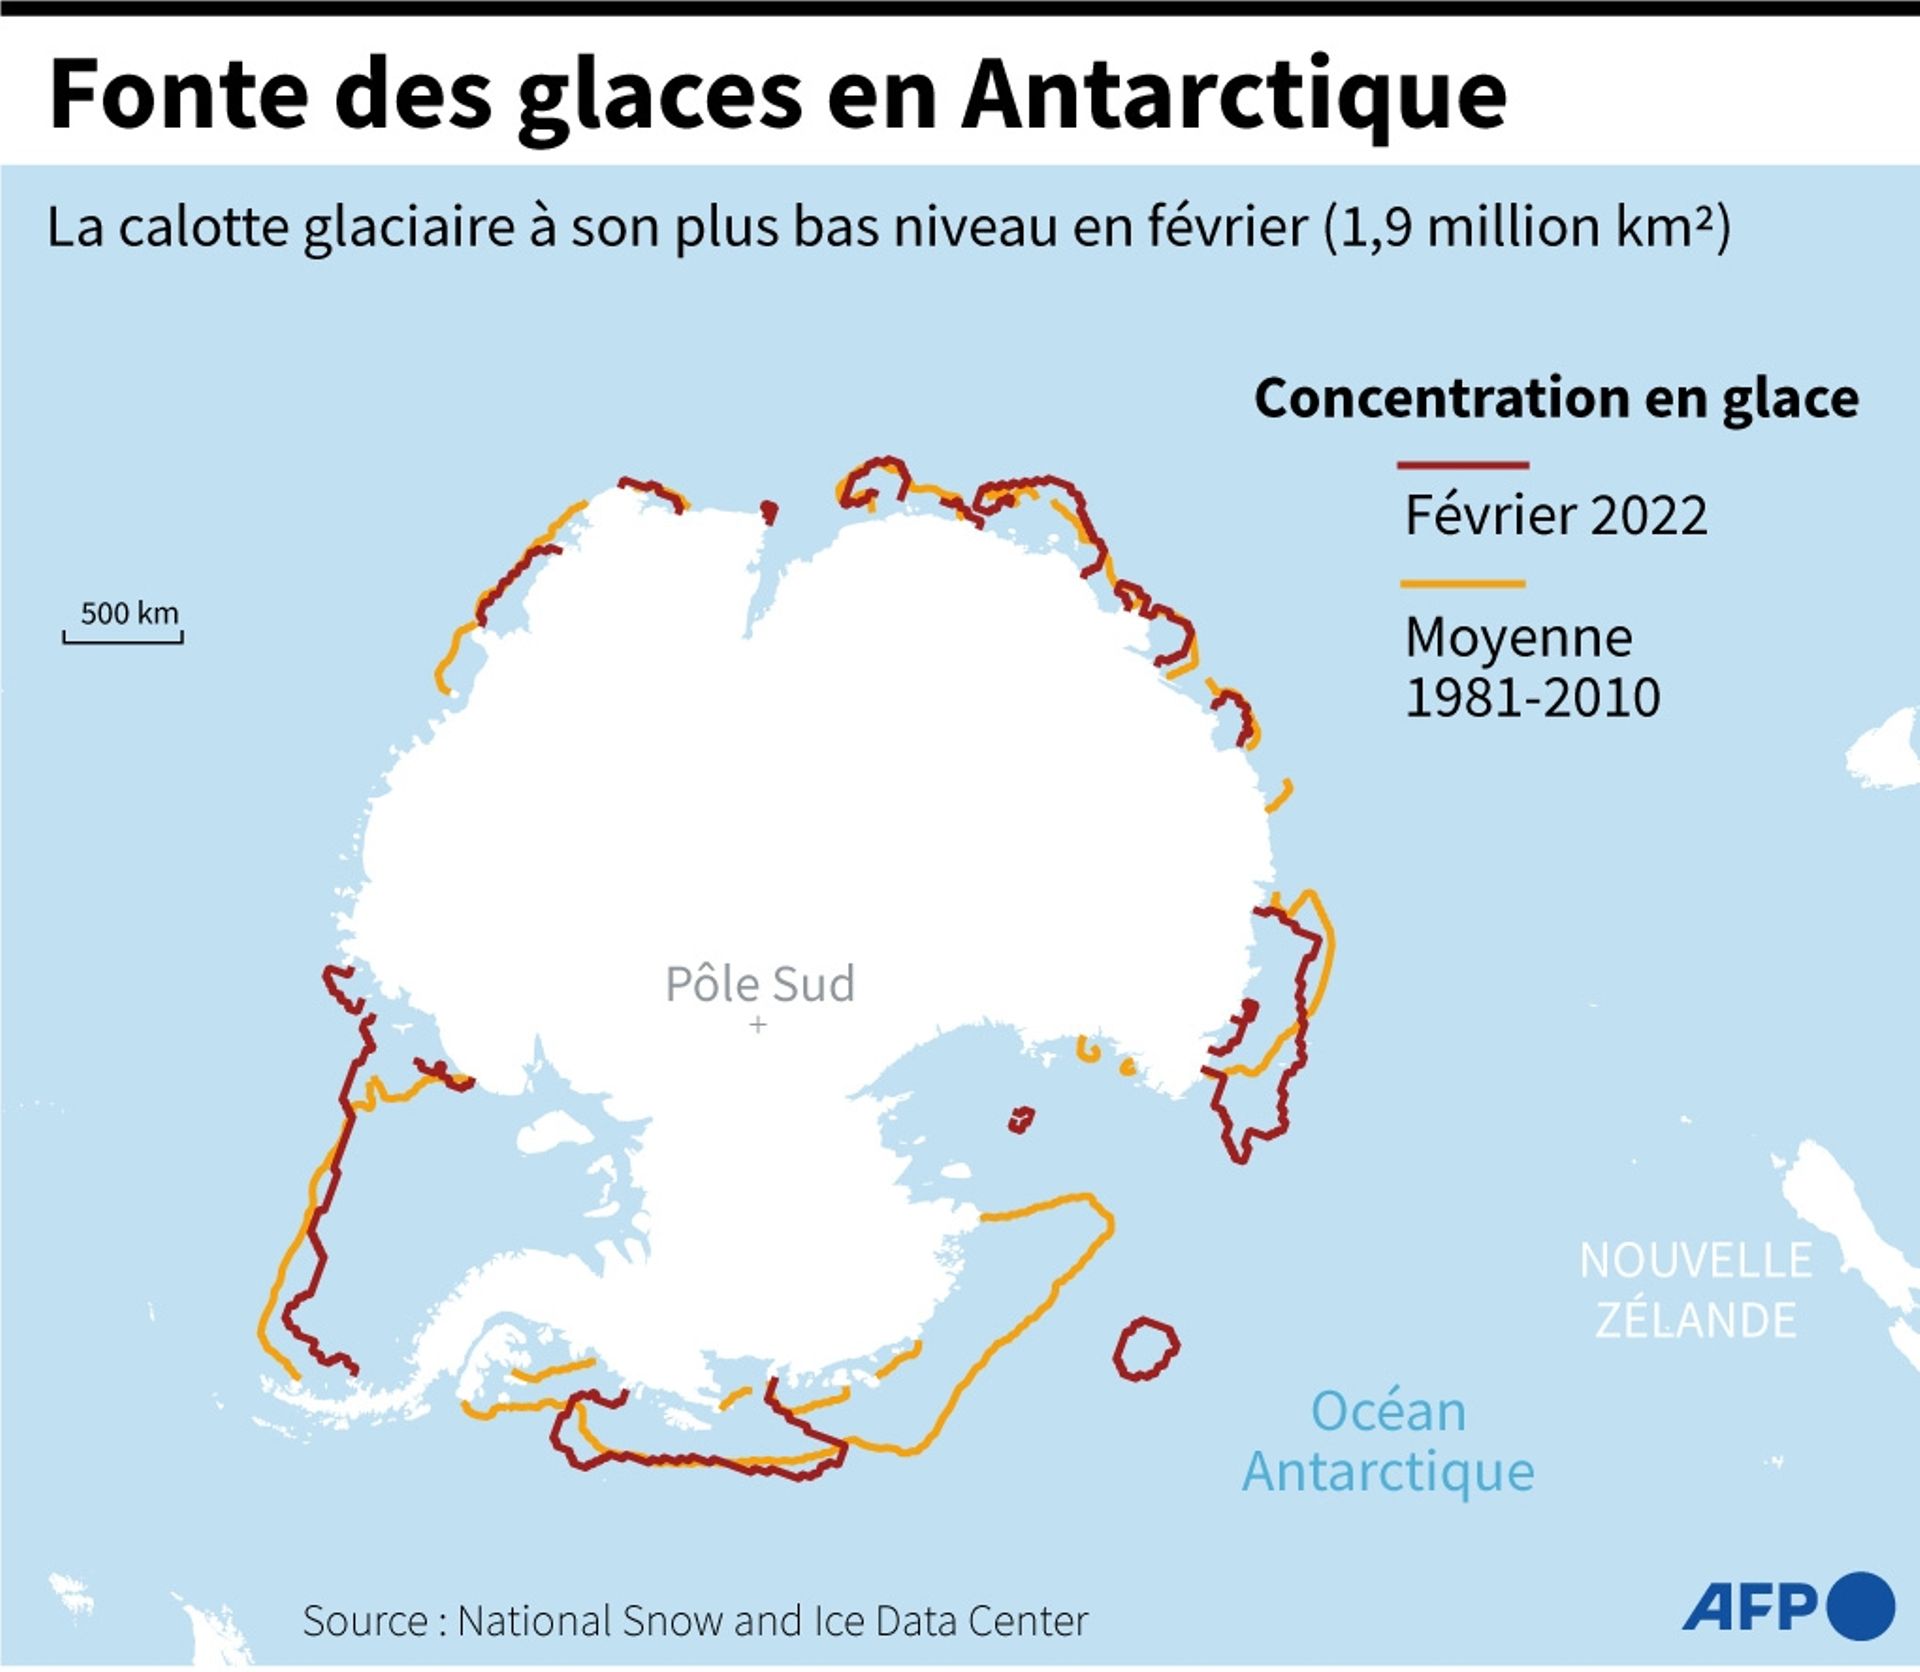 Graphique montrant l’état de la calotte glaciaire en Antarctique, à son plus bas niveau historique en février 2022.
